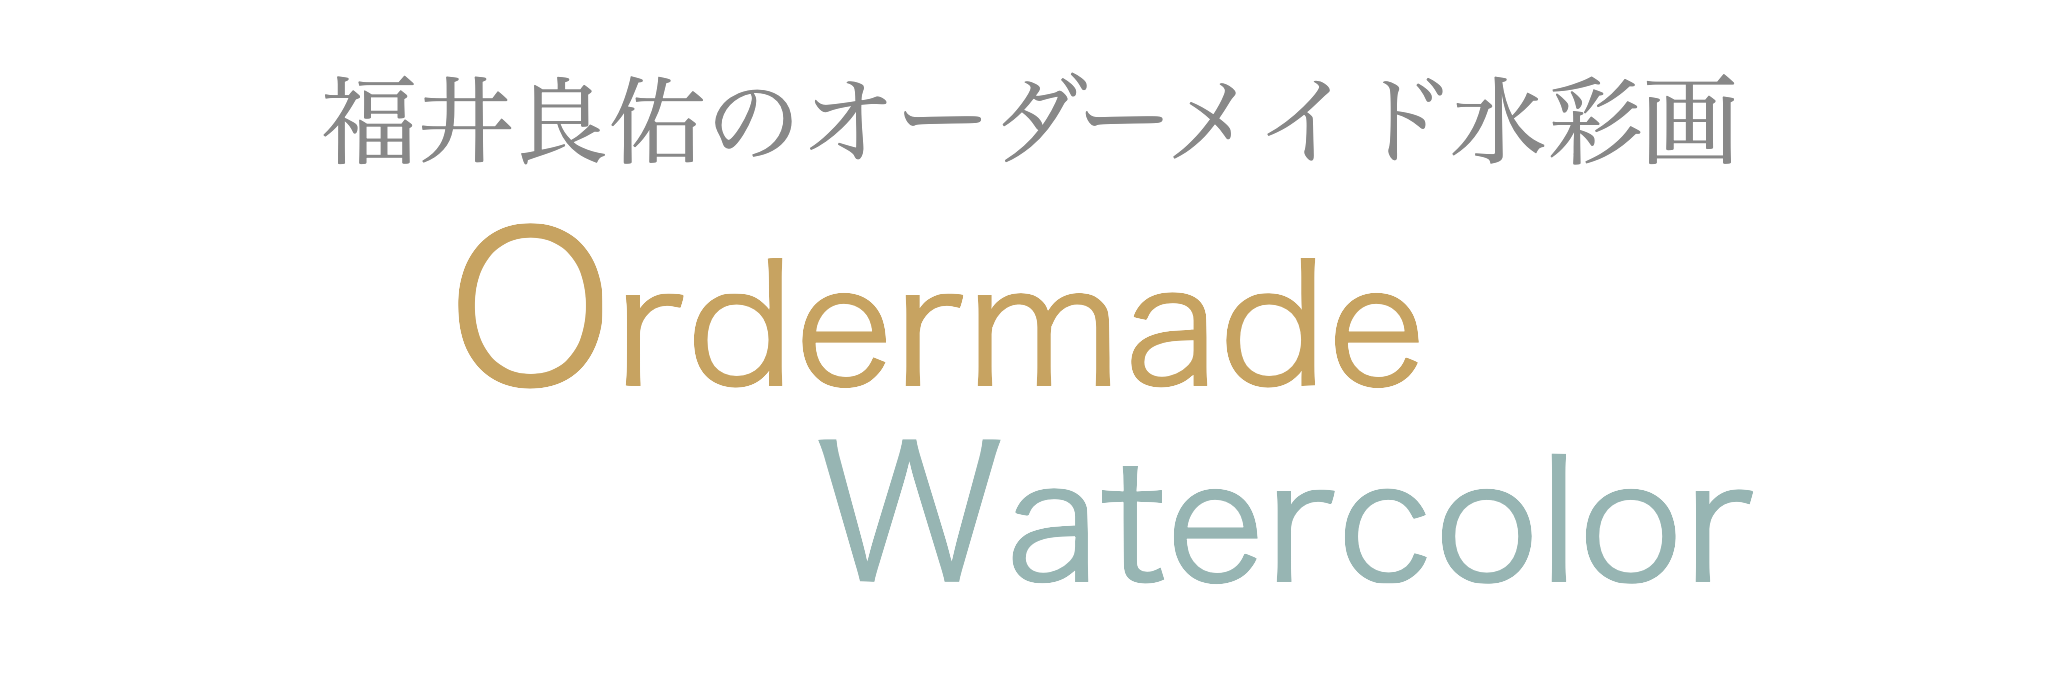 オーダーメイド水彩画のホームページを作りました : 福井良佑の水彩画 ...